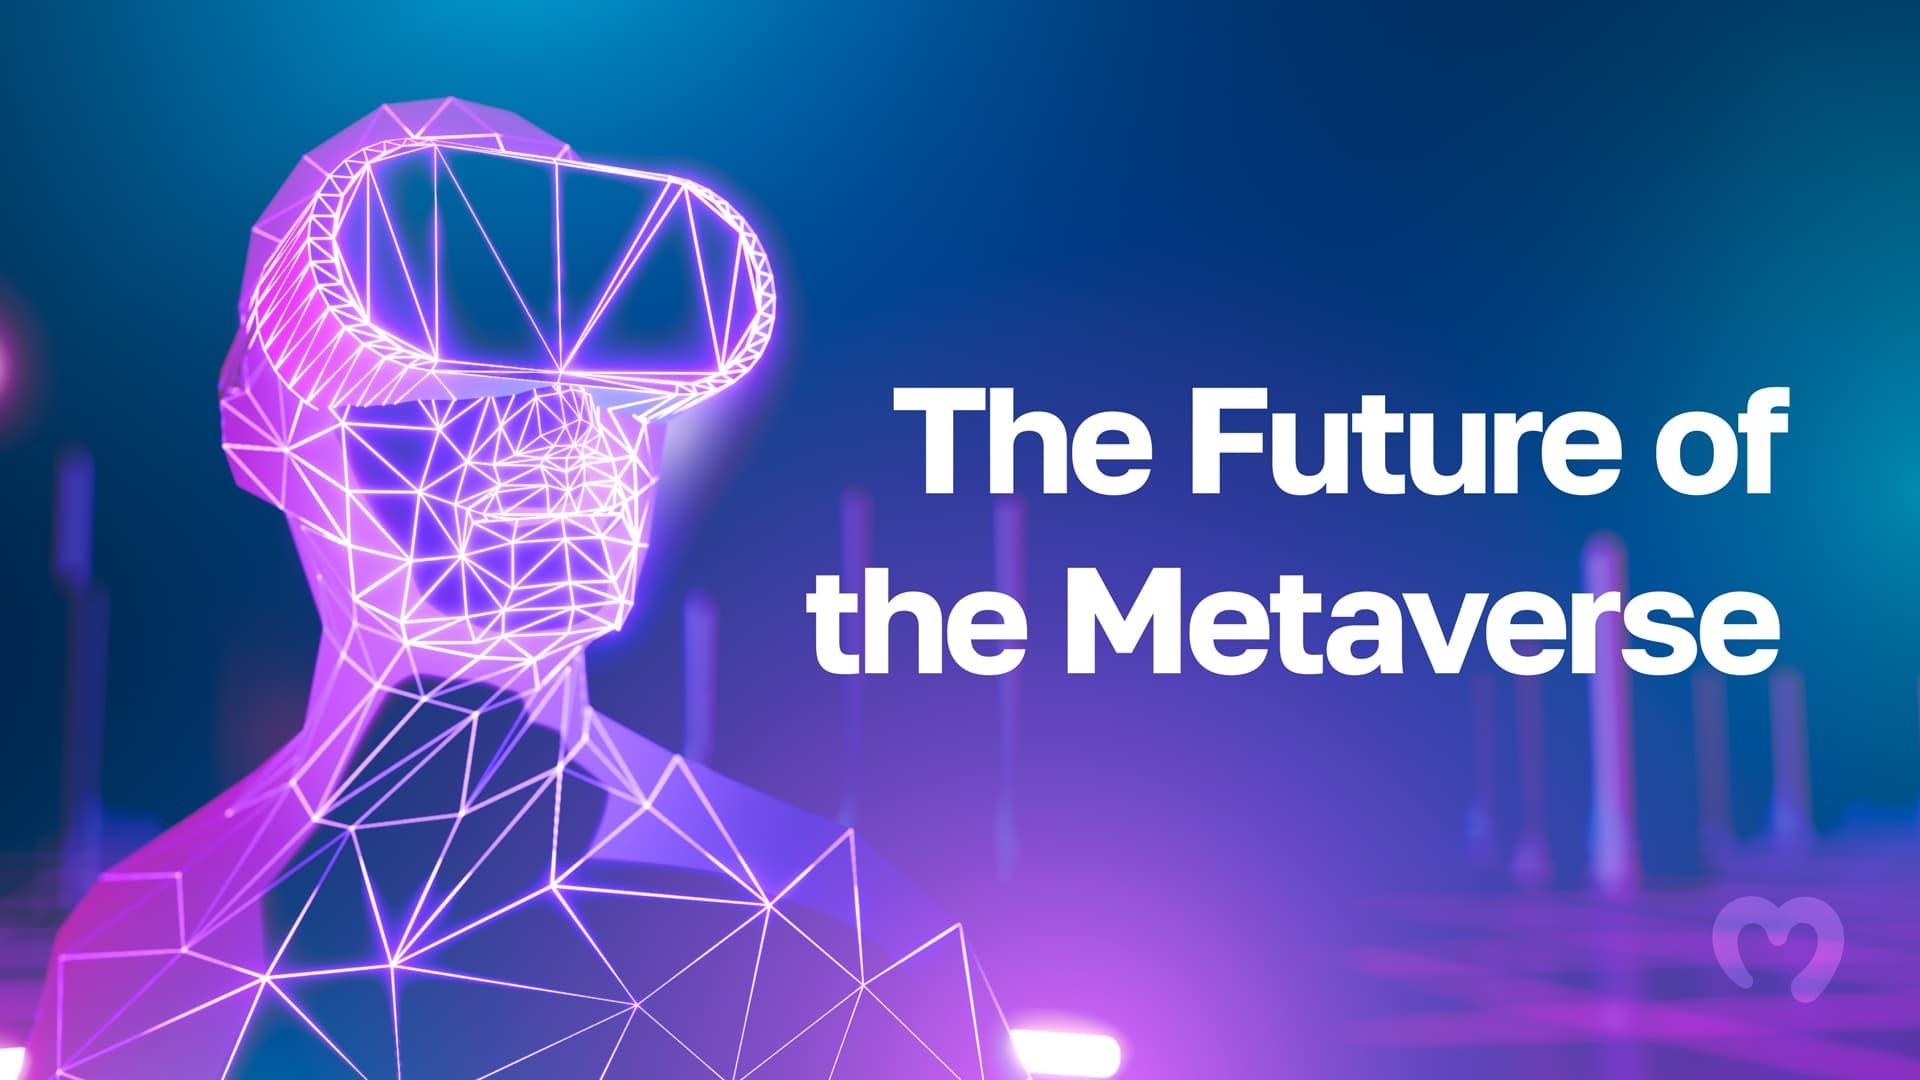 图片展示了一个线条构成的数字化人像，背景是蓝色调科技感场景，旁边有“Metaverse未来”字样。